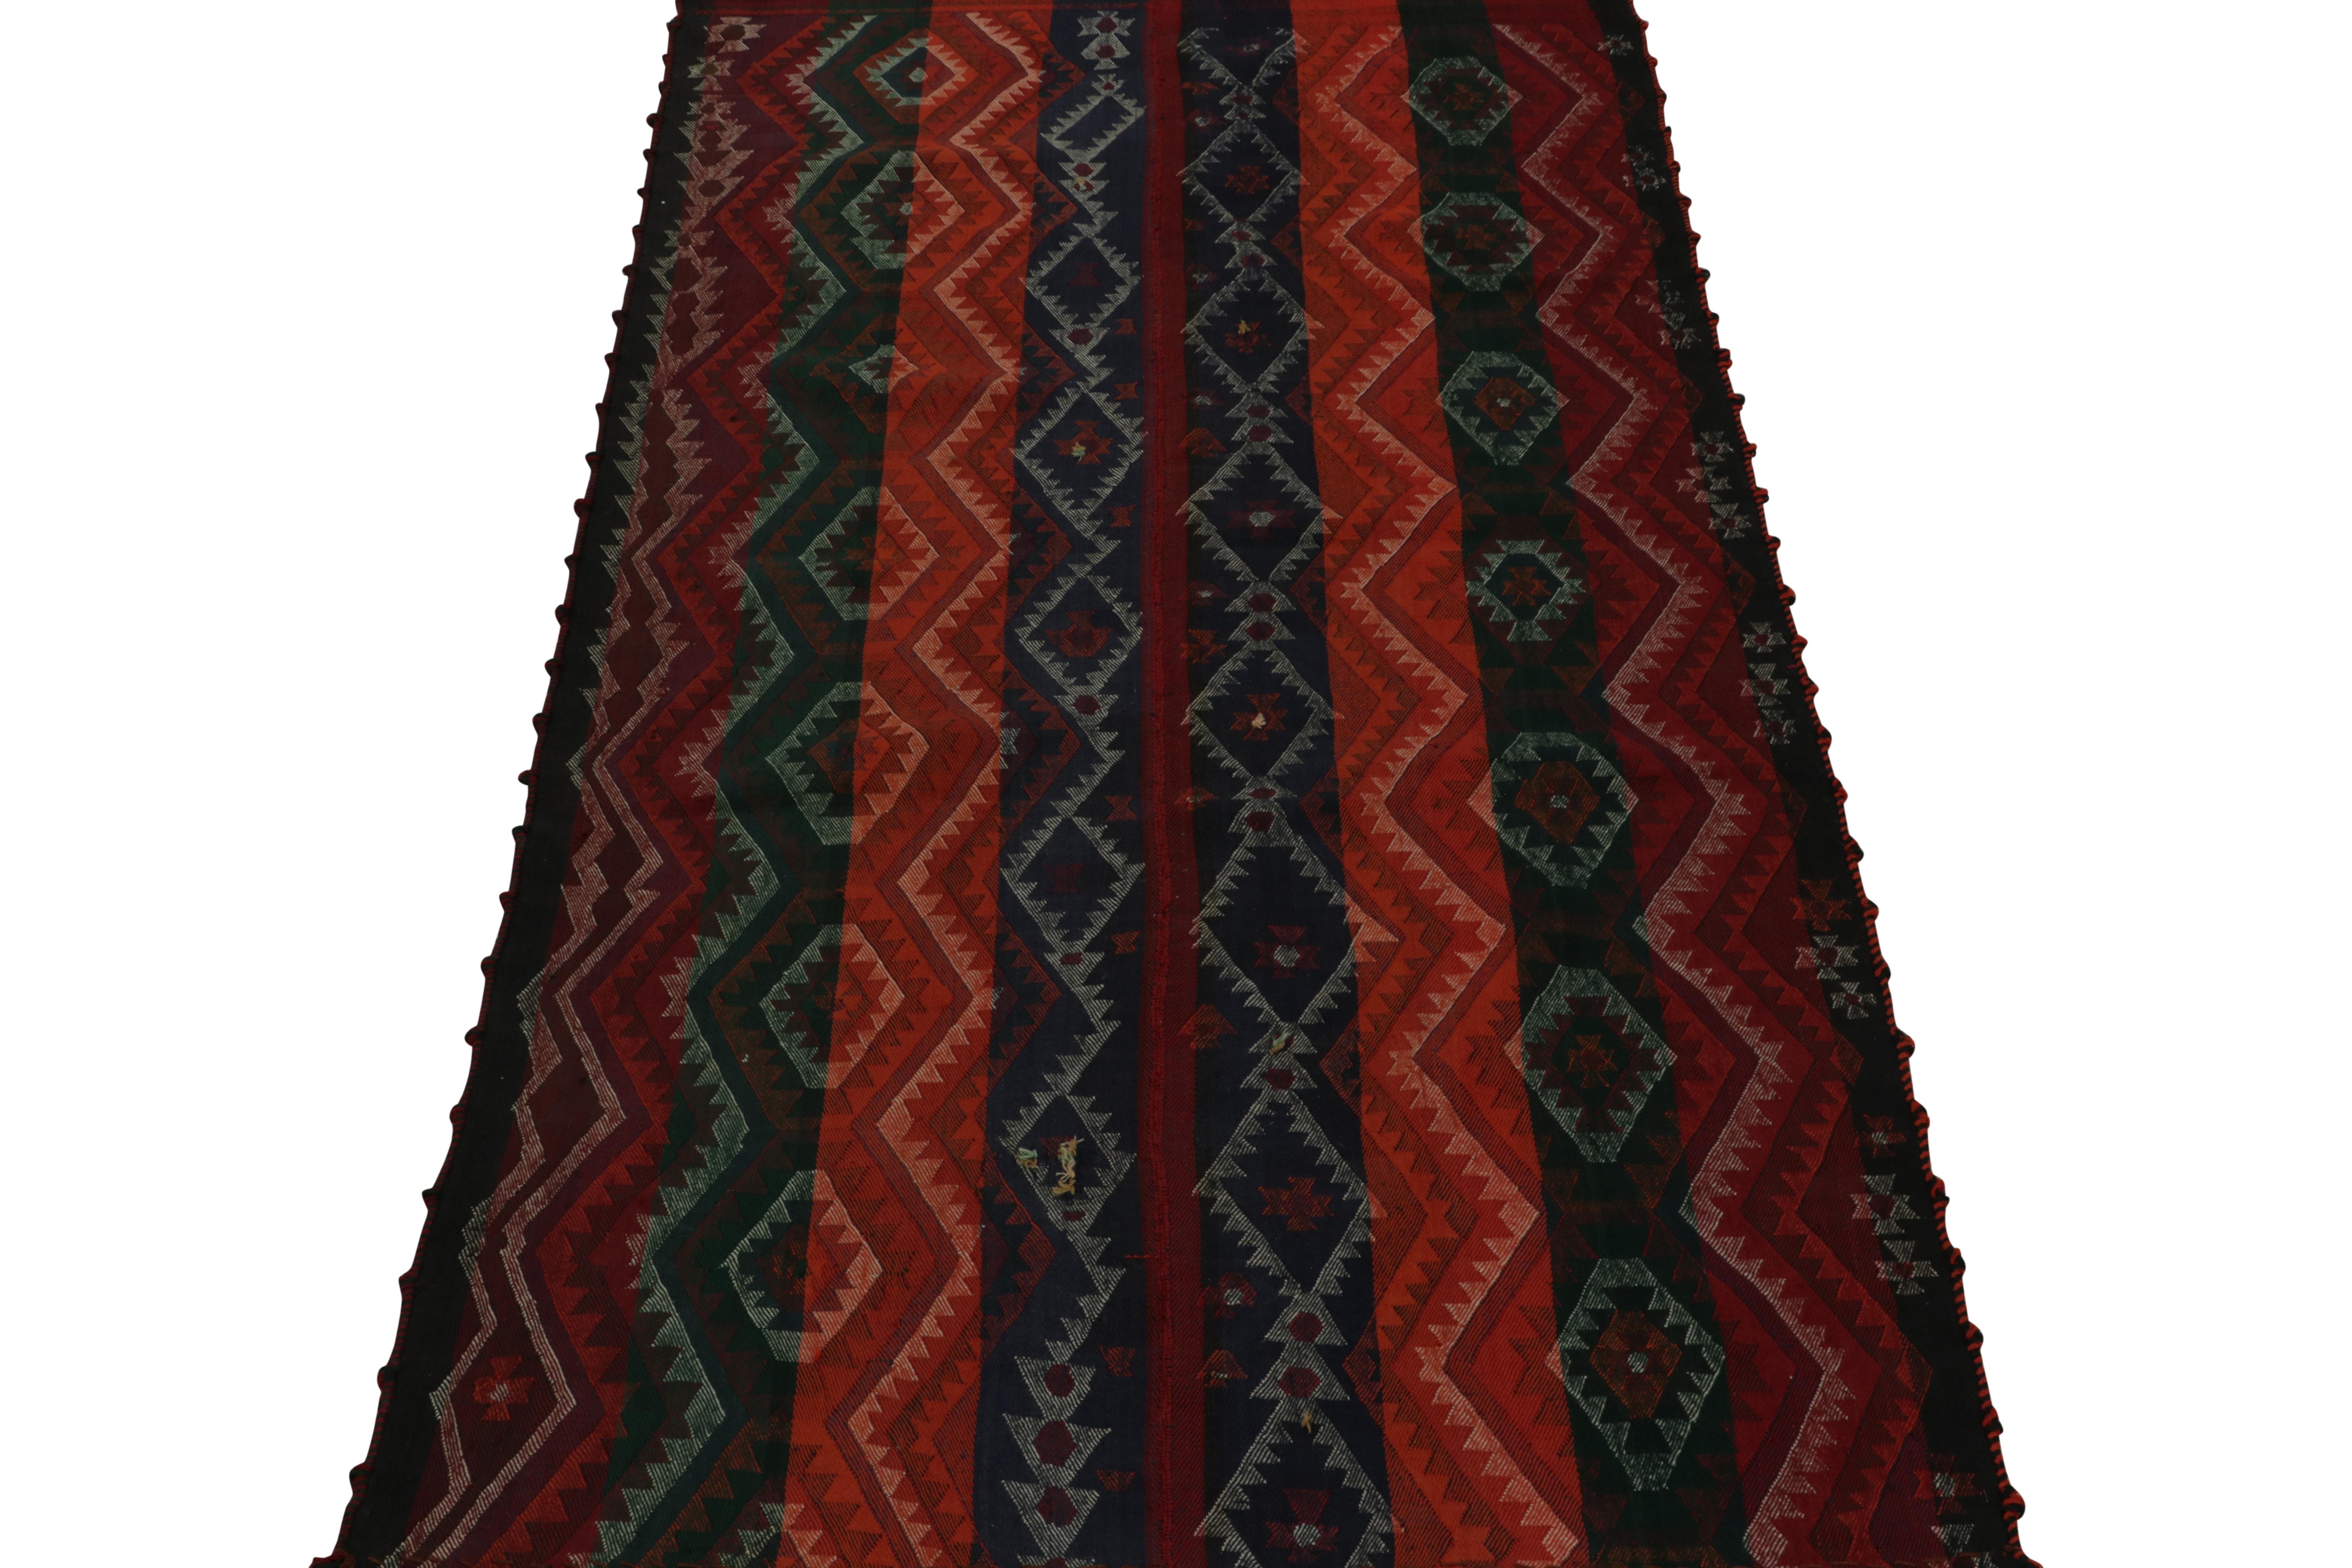 Ce kilim persan 4x8 de Shiraz est un chemin de table tribal tissé à la main en laine vers 1950-1960.

Plus loin dans le Design :

Ce tissage plat est réalisé selon la technique du tissage en panneaux, qui permet de combiner deux pièces comme